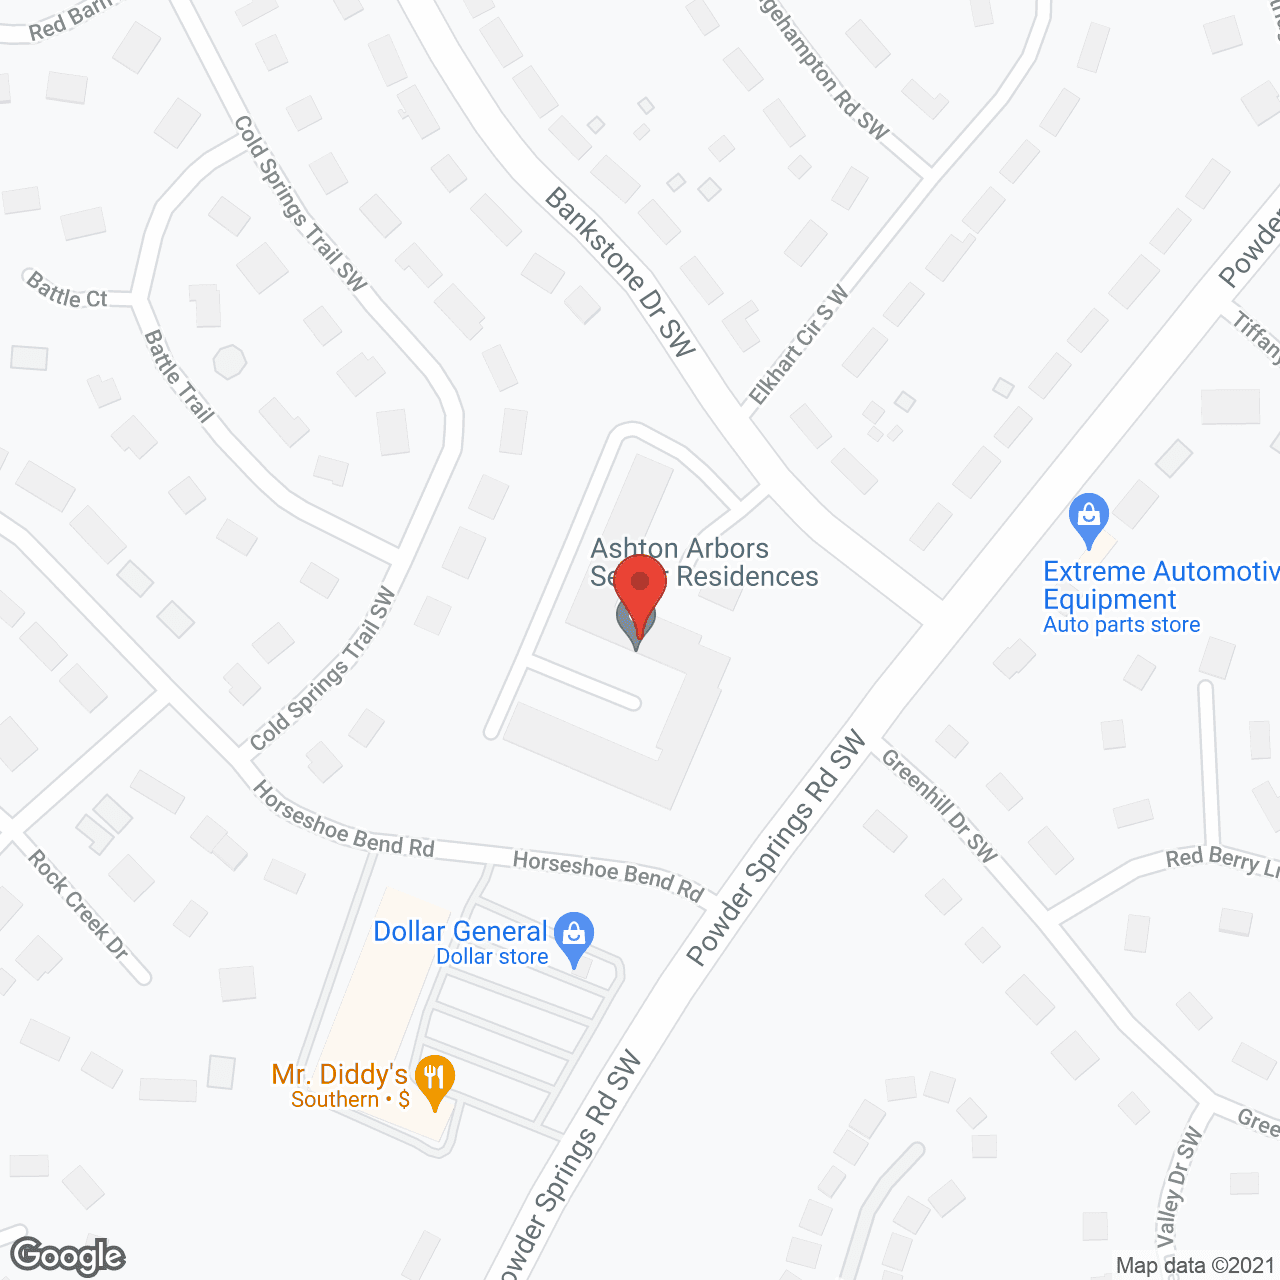 Ashton Arbors in google map